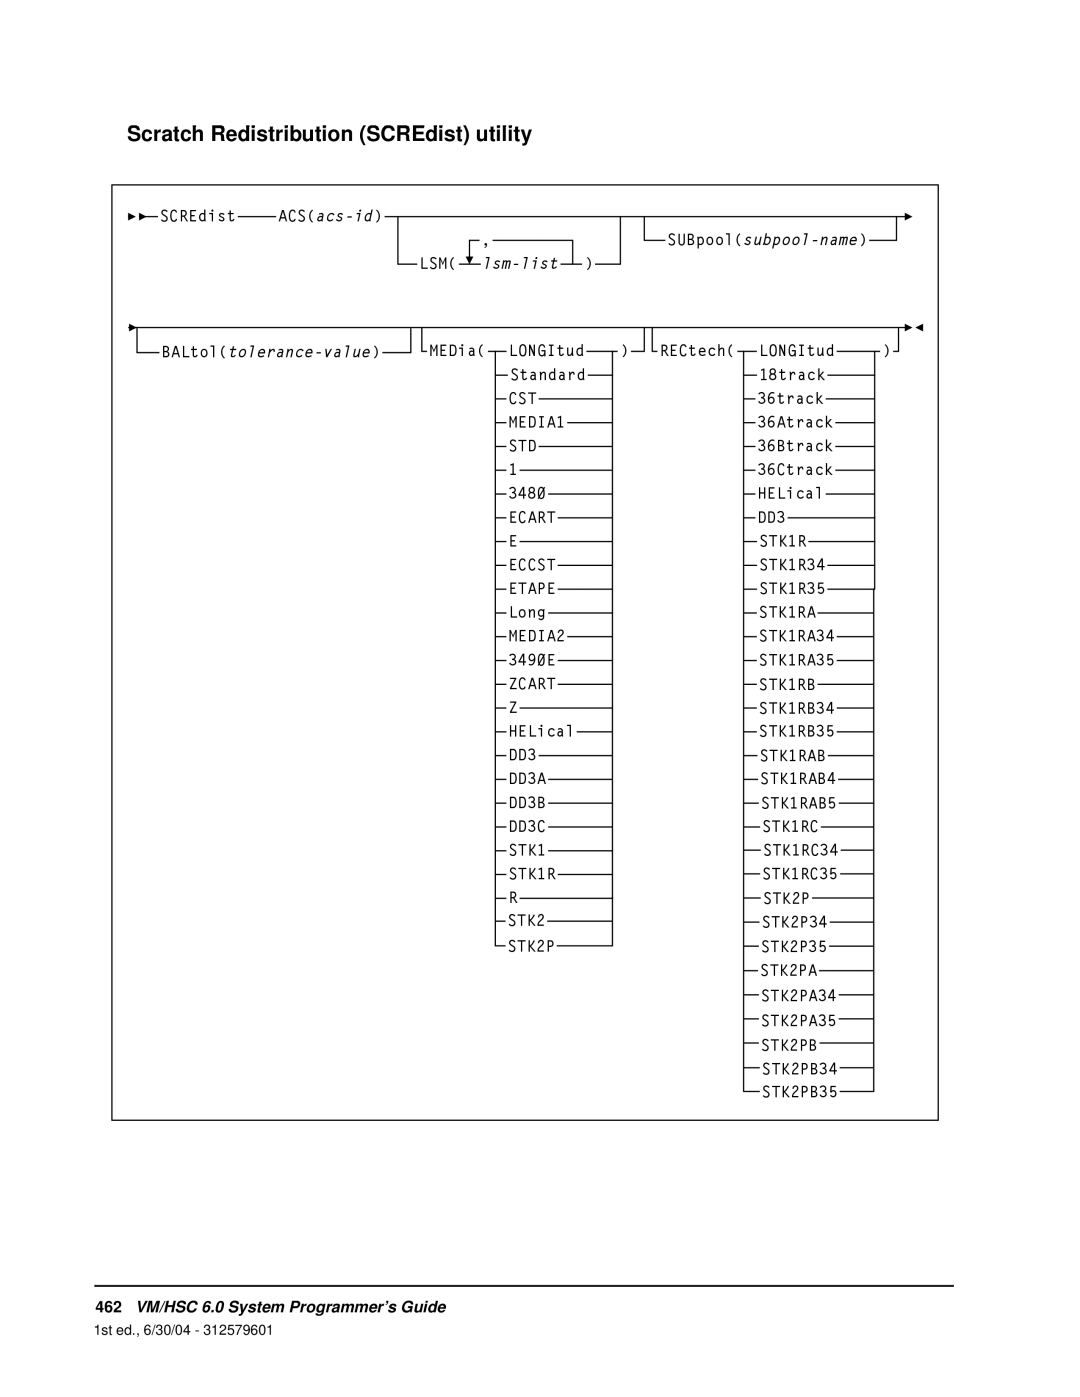 StorageTek manual Scratch Redistribution SCREdist utility, 462VM/HSC 6.0 System Programmer’s Guide 